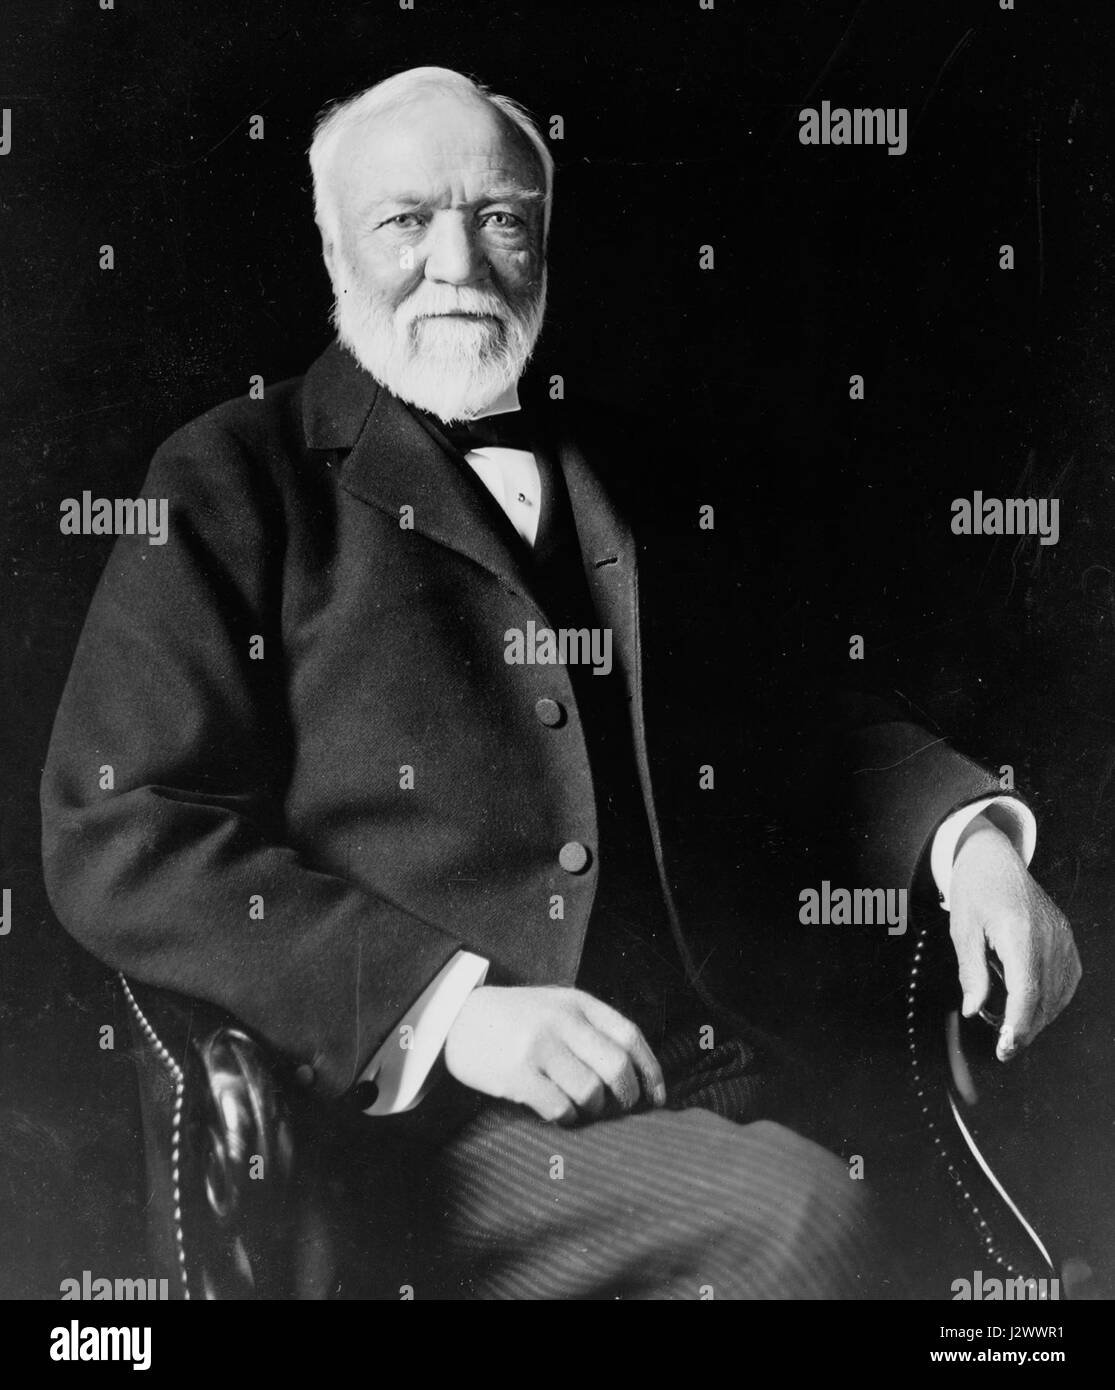 Andrew Carnegie, de tres cuartos de longitud vertical, sentado, mirando ligeramente a la izquierda, 1913 Foto de stock